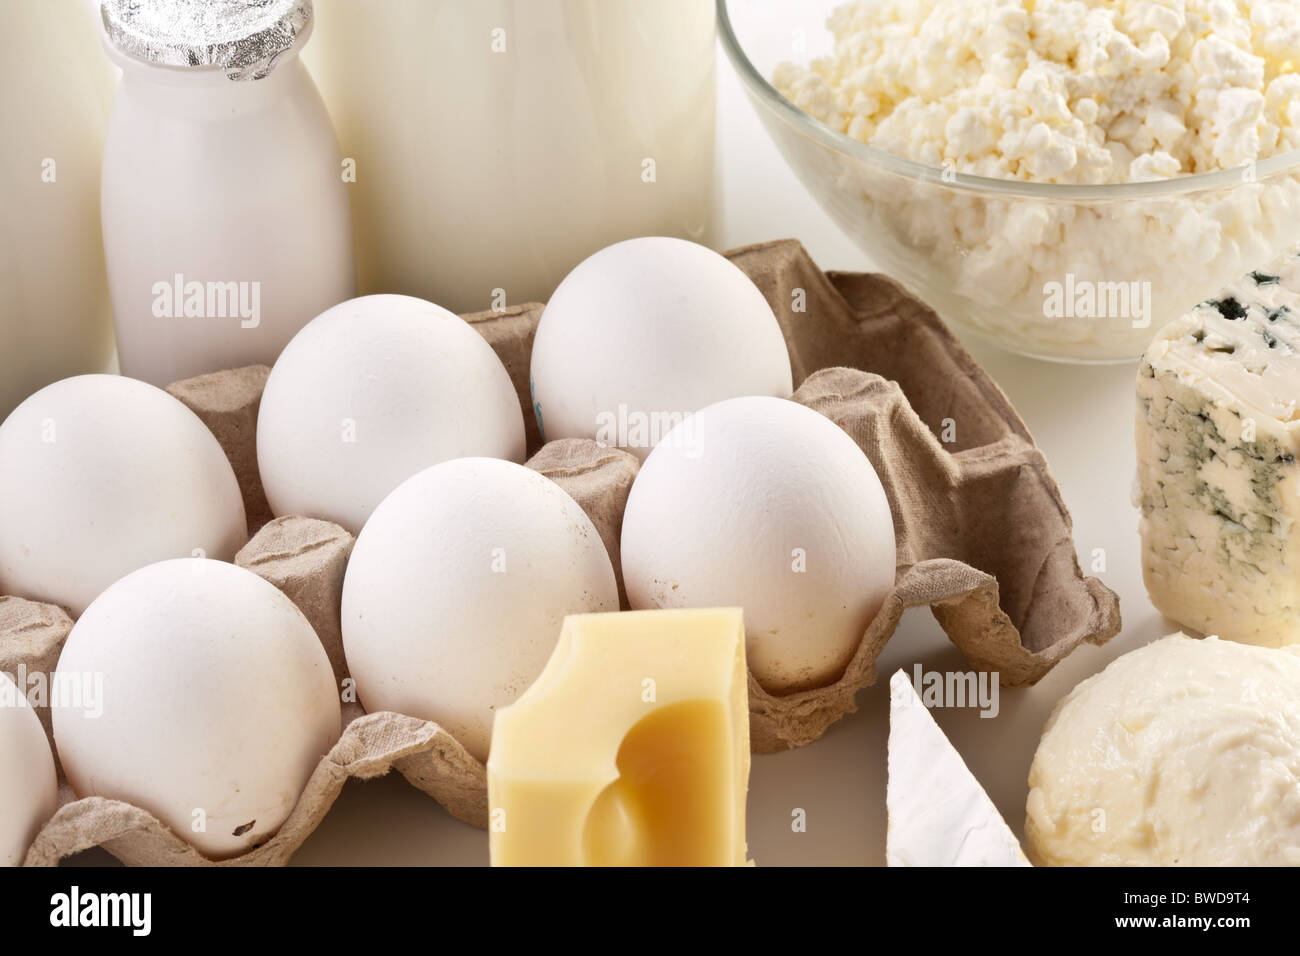 Protein-Produkte: Käse, Sahne, Milch, Eiern. Auf einem weißen Hintergrund. Stockfoto